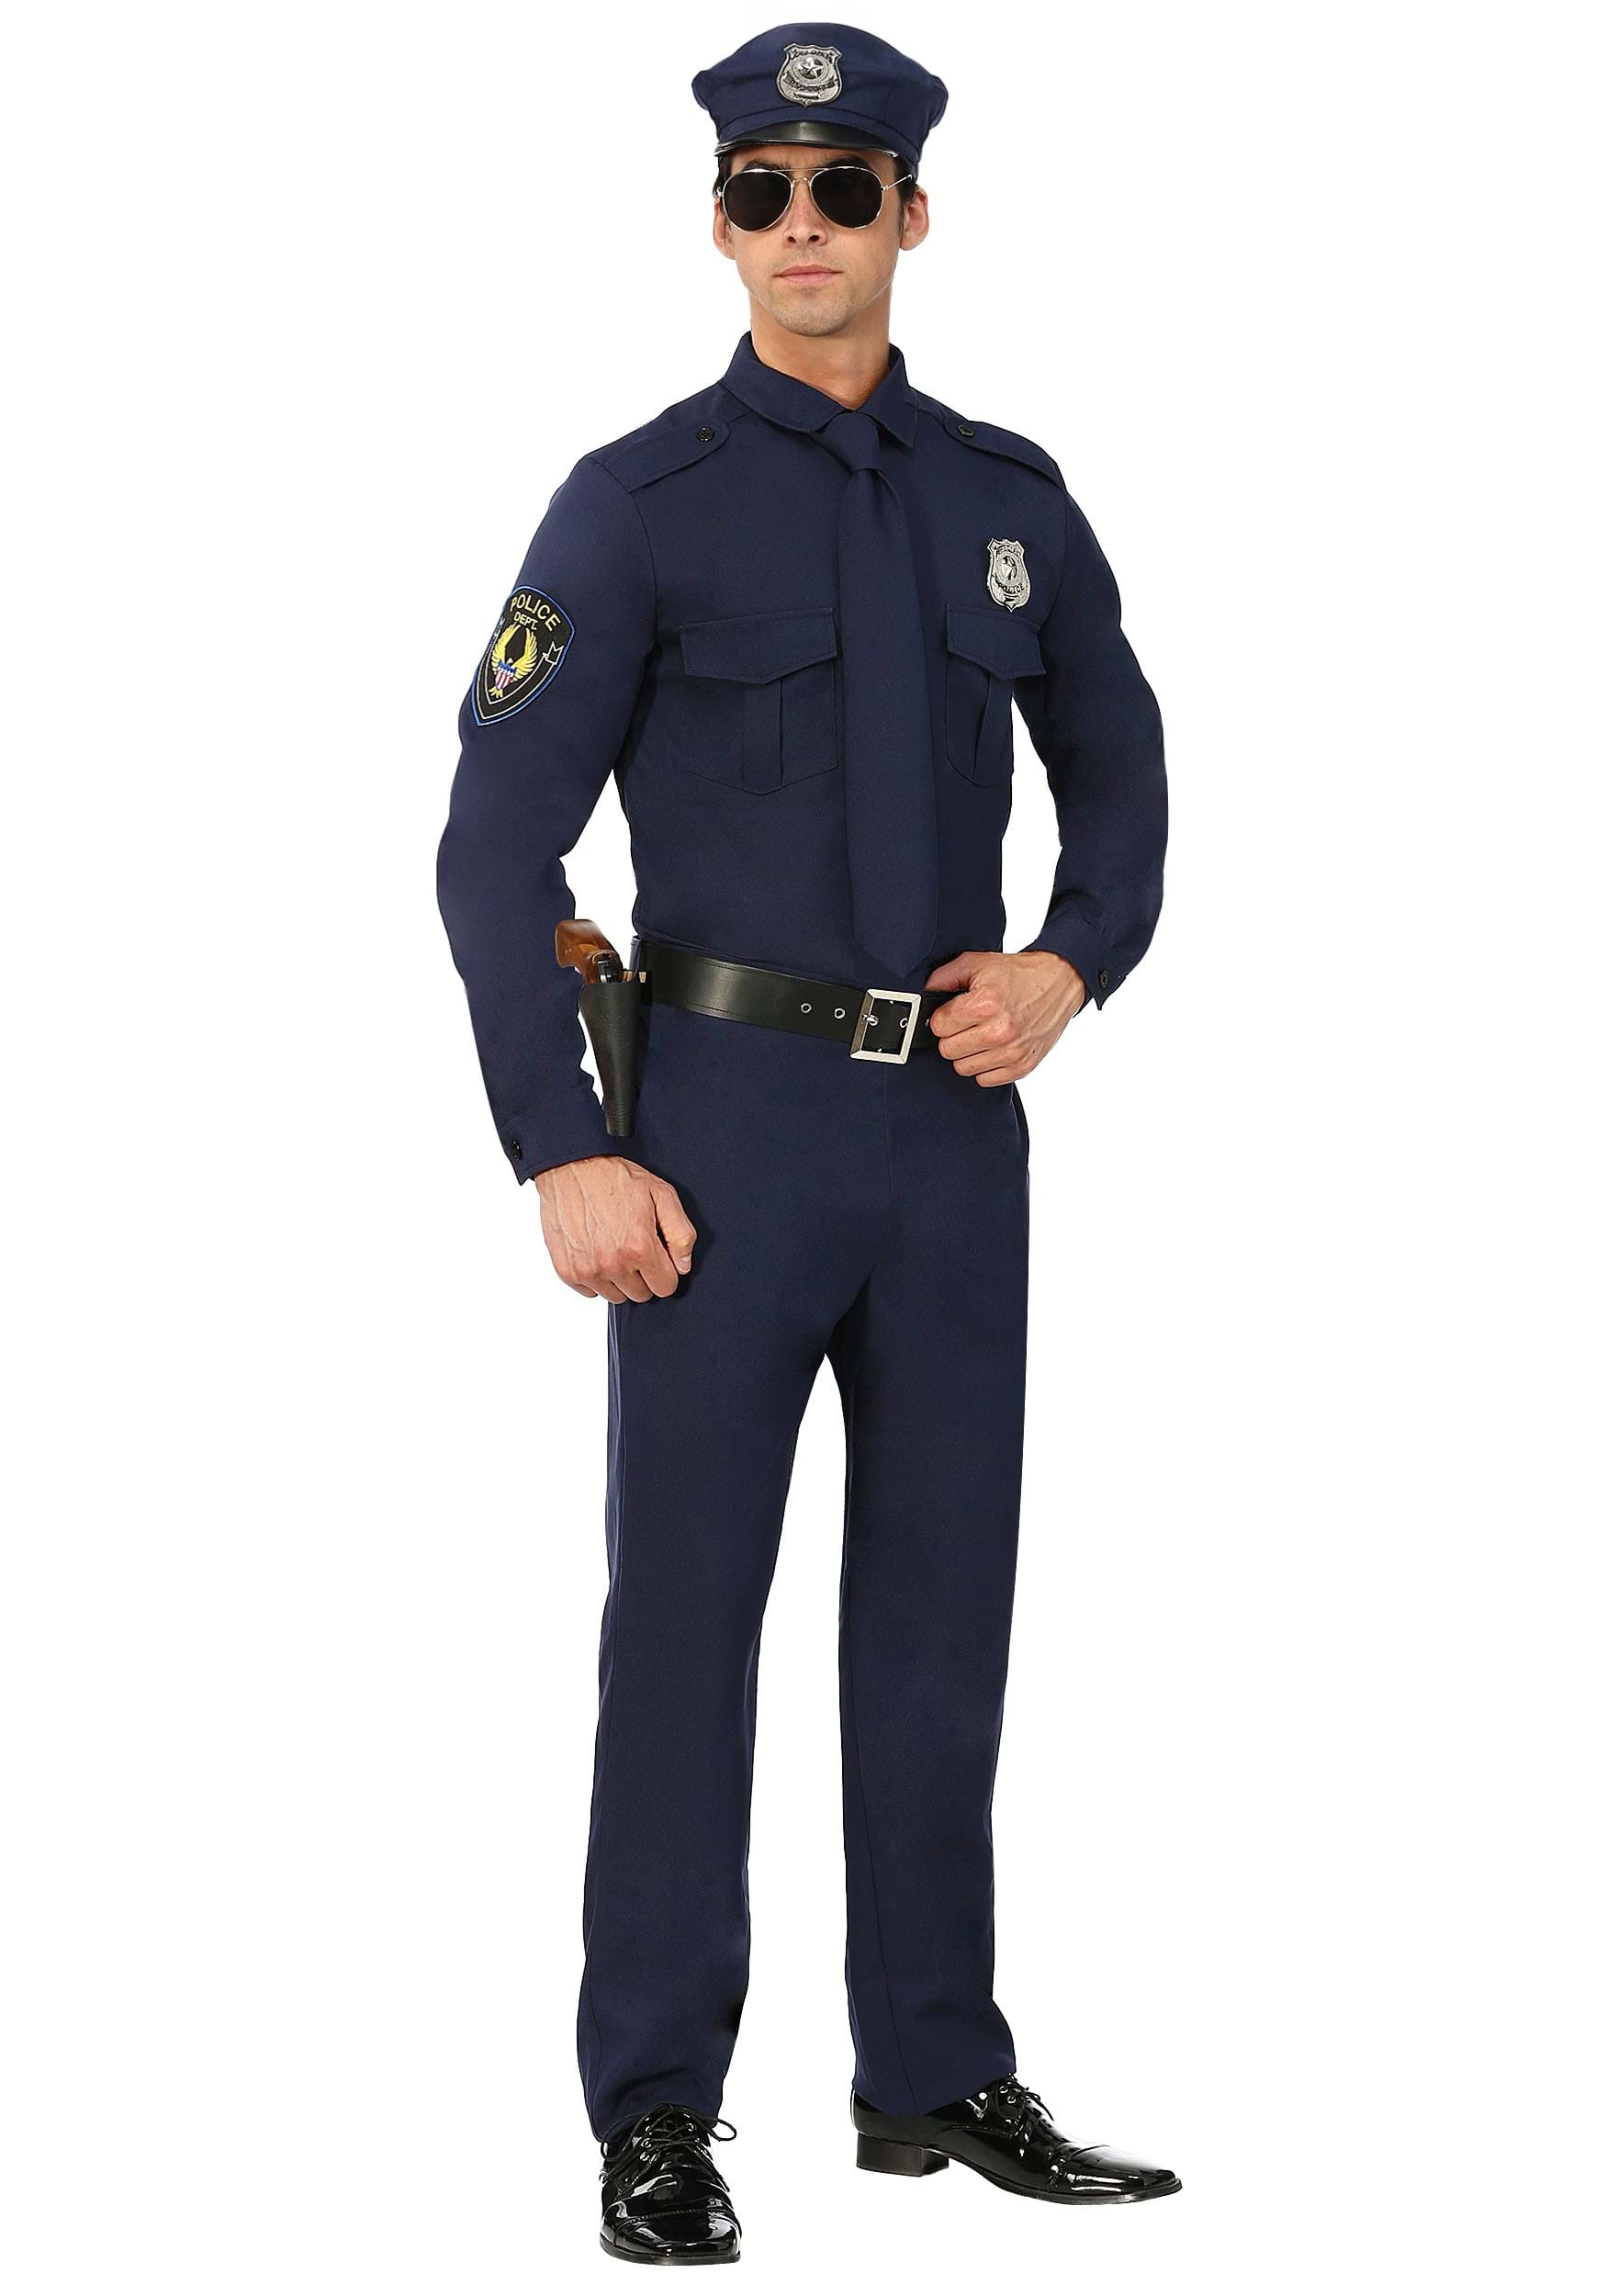 Men S Cop Costume Adult Halloween Police Costume